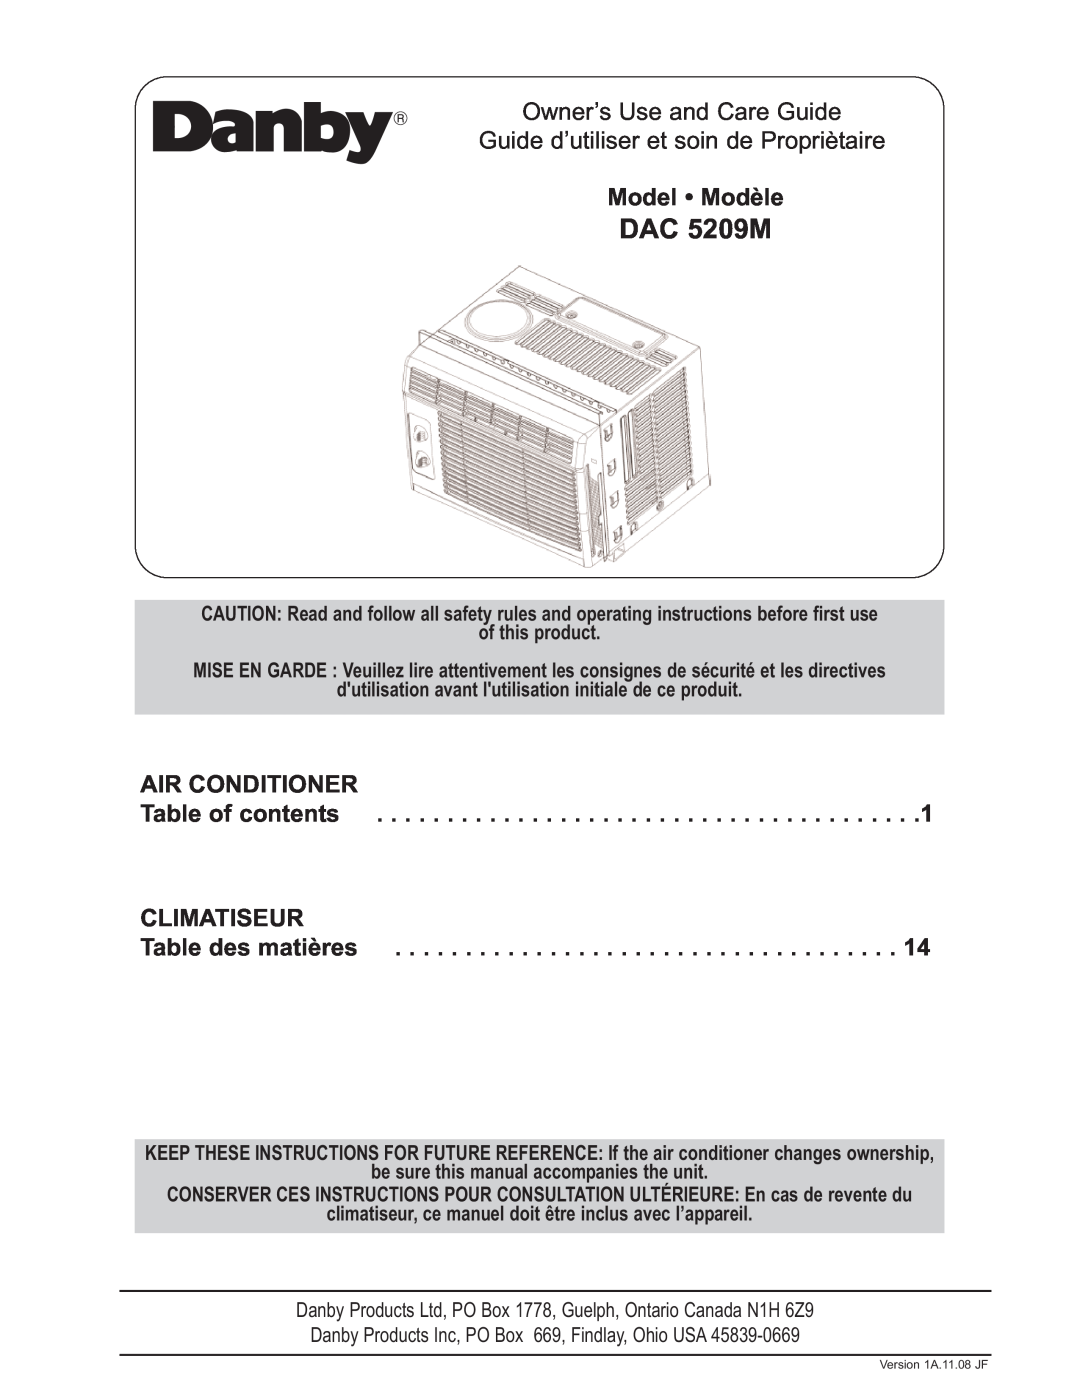 Danby DAC 5209M manual Model Modèle, Air Conditioner, Table of contents, Climatiseur, Table des matières 